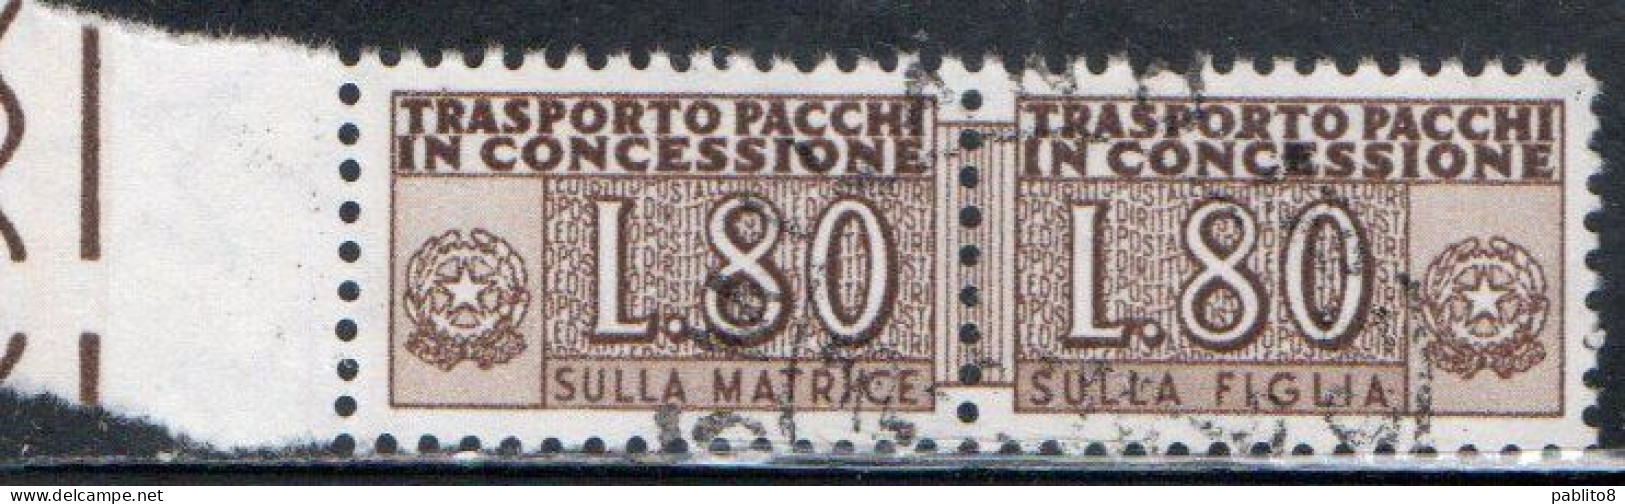 ITALIA REPUBBLICA ITALY REPUBLIC 1955 1981 PACCHI IN CONCESSIONE PARCEL POST STELLE STARS 1960 LIRE 80 USATO USED OBLIT - Consigned Parcels